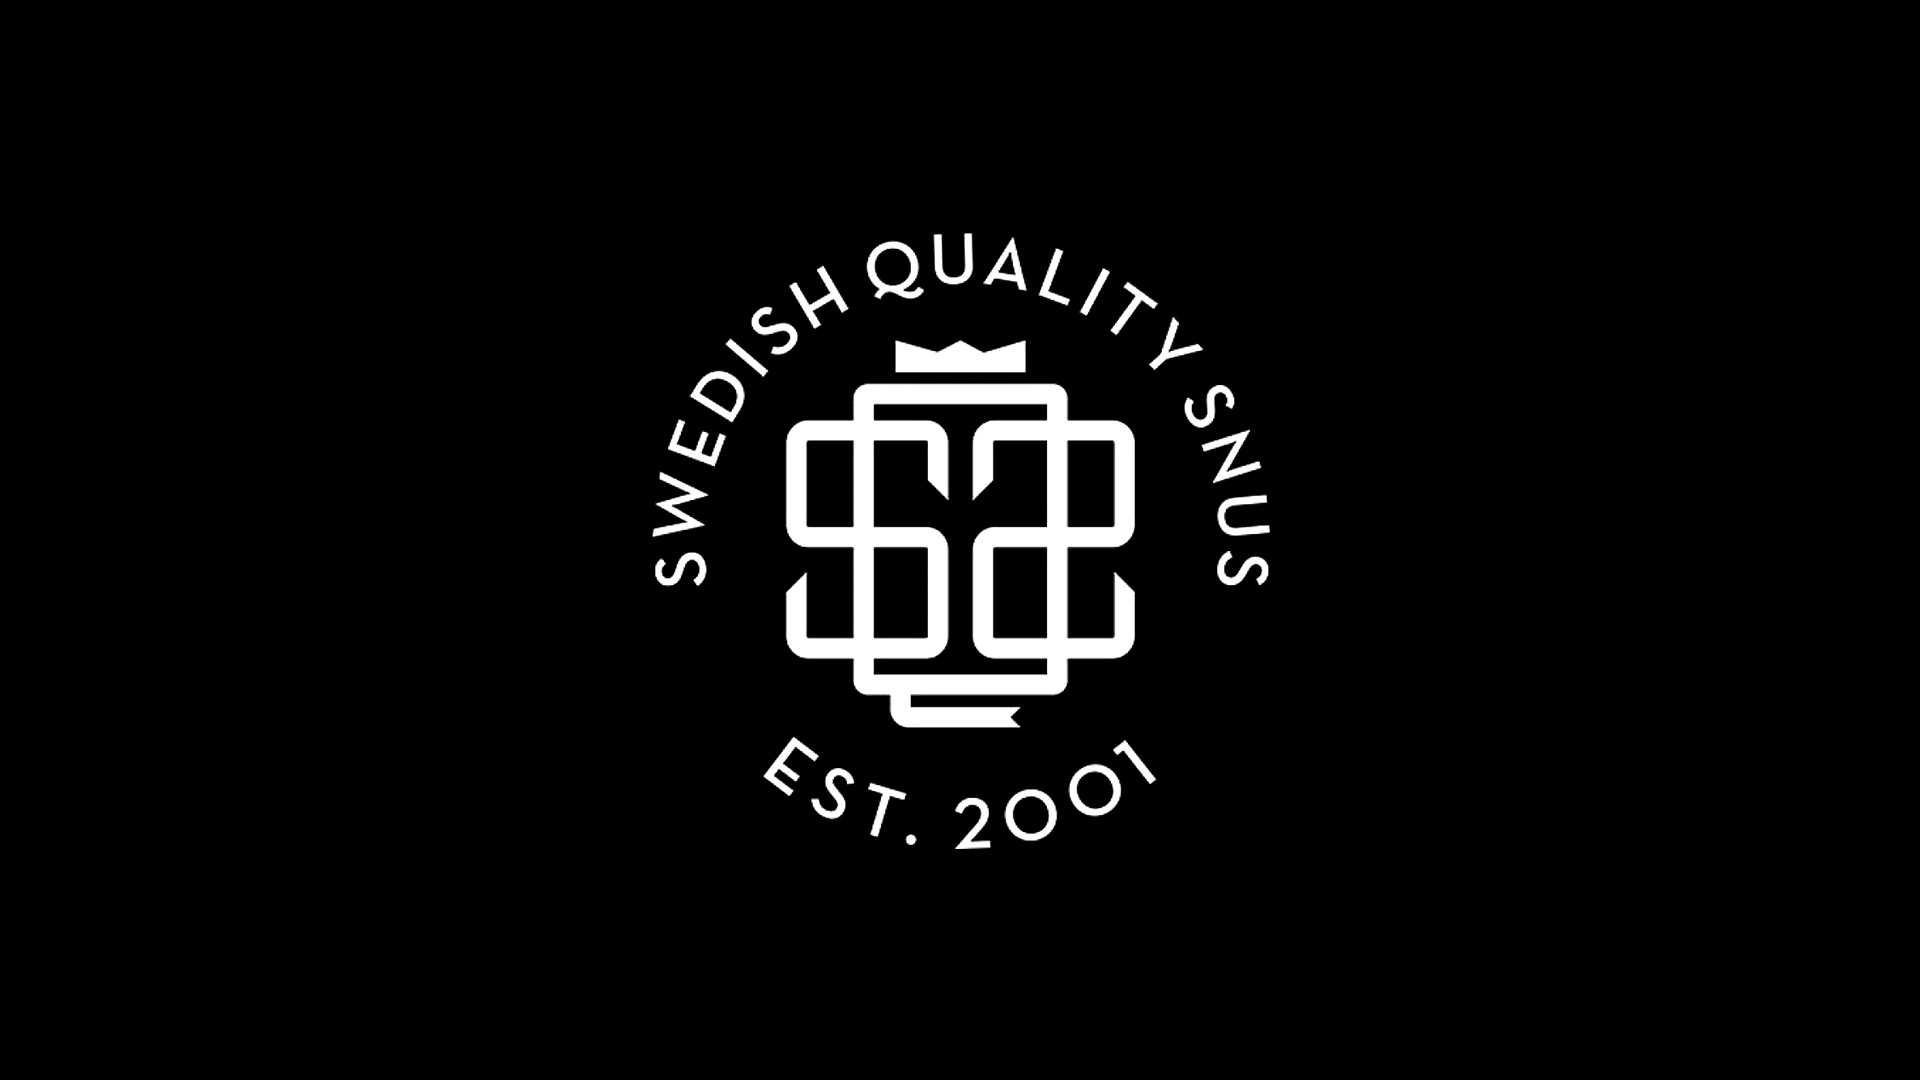 Kvalitetsstämpel Swedish Quality snus från Nordic Snus